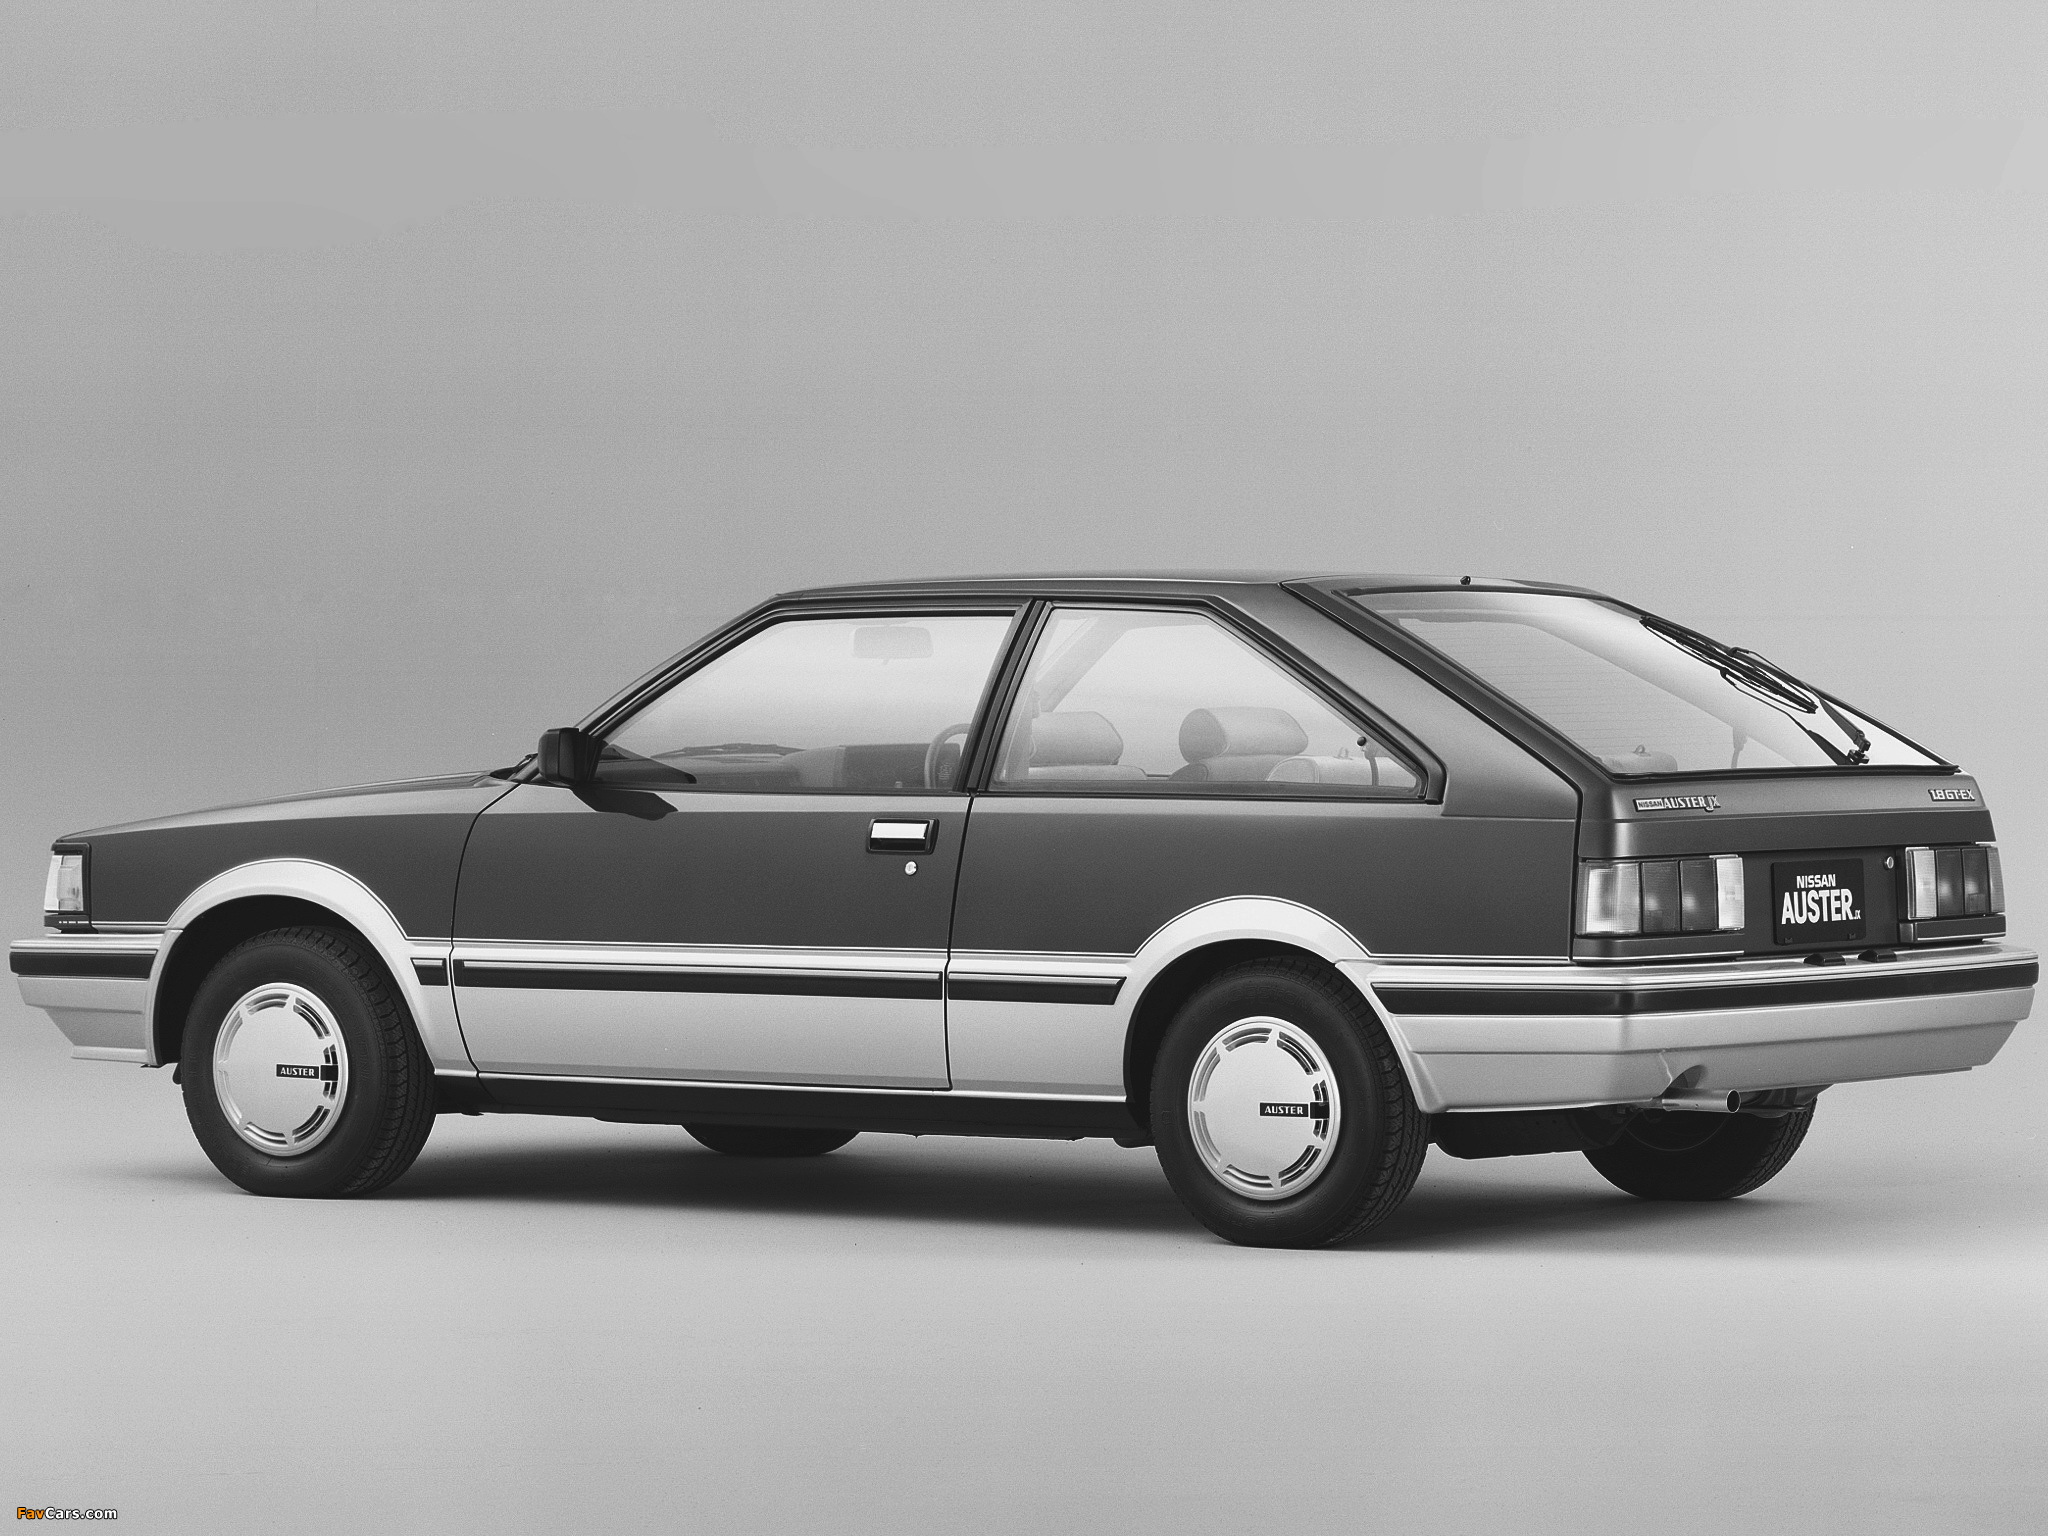 Nissan Auster JX Hatchback 1800 GT-EX (T11) 1983–85 images (2048 x 1536)